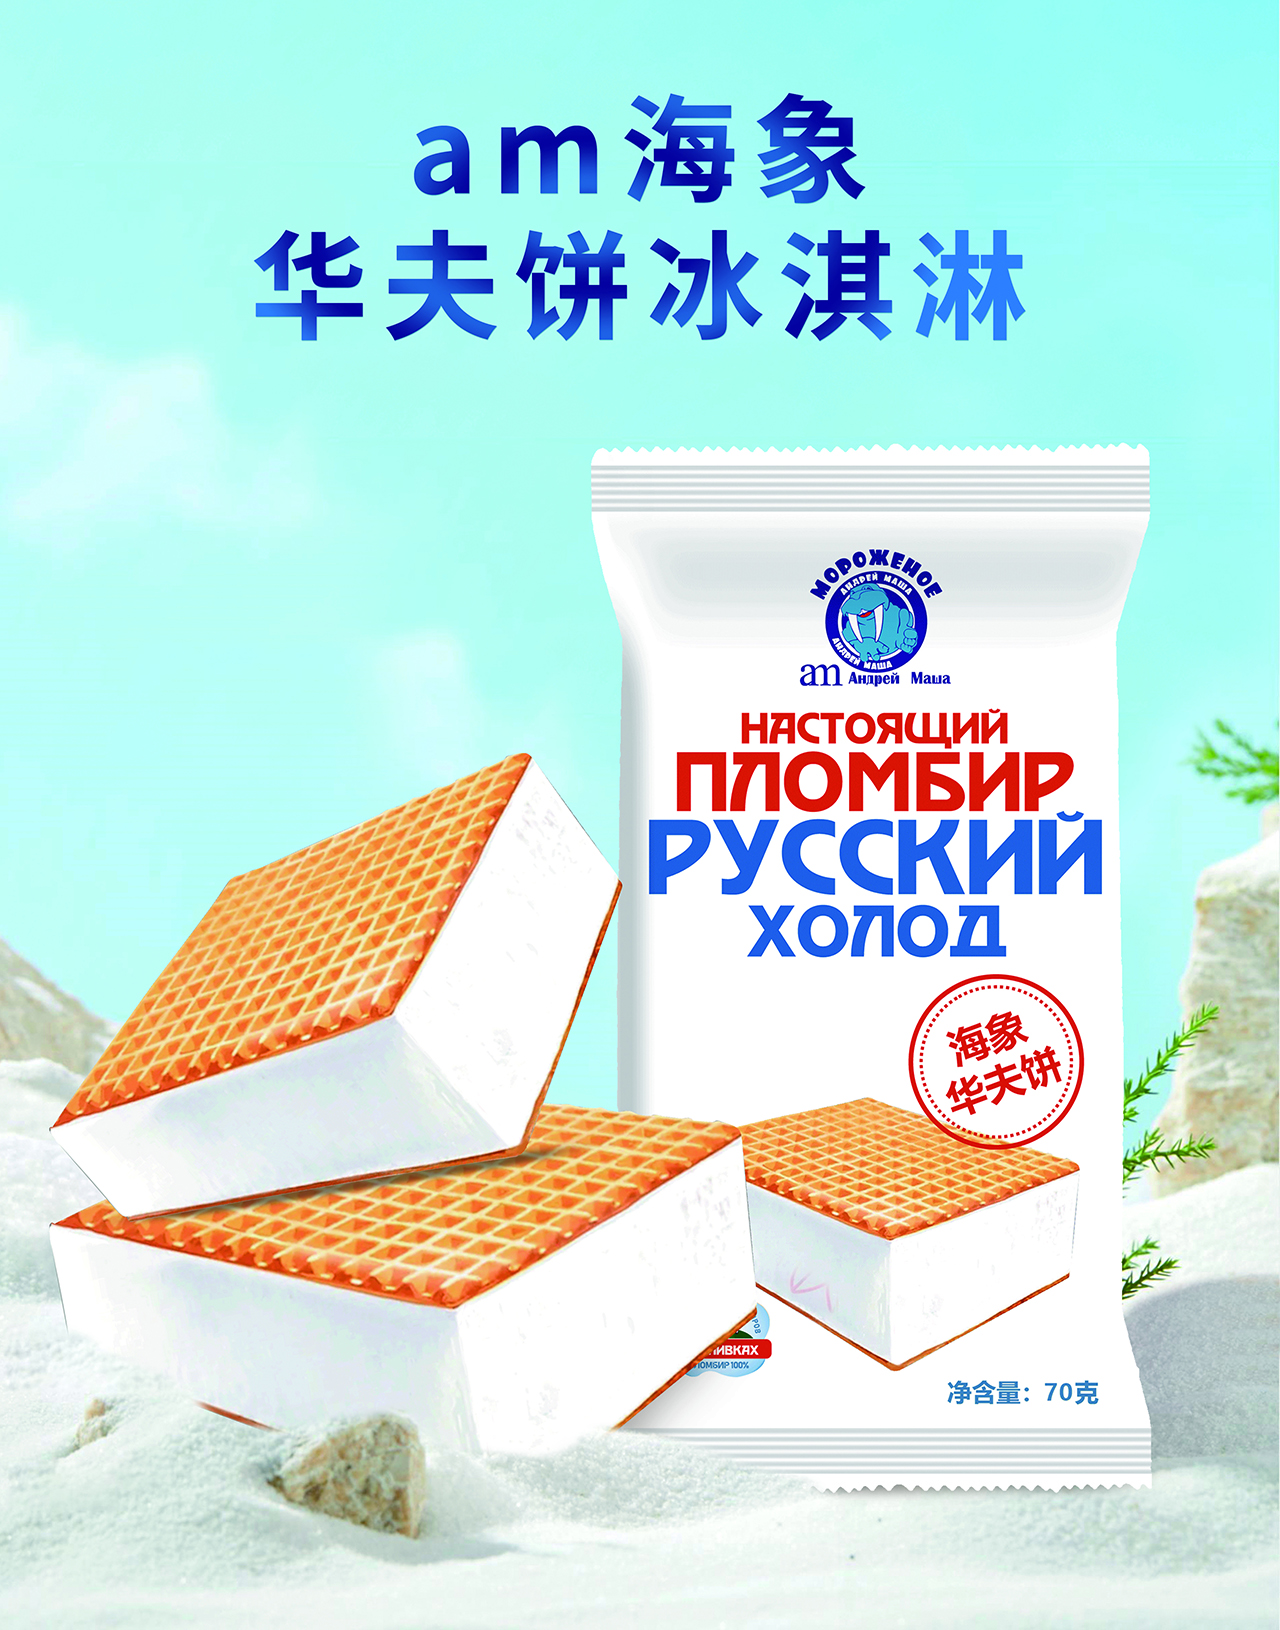 am海象皇宫冰淇淋甄选俄罗斯优质原料，采用现代化生产线